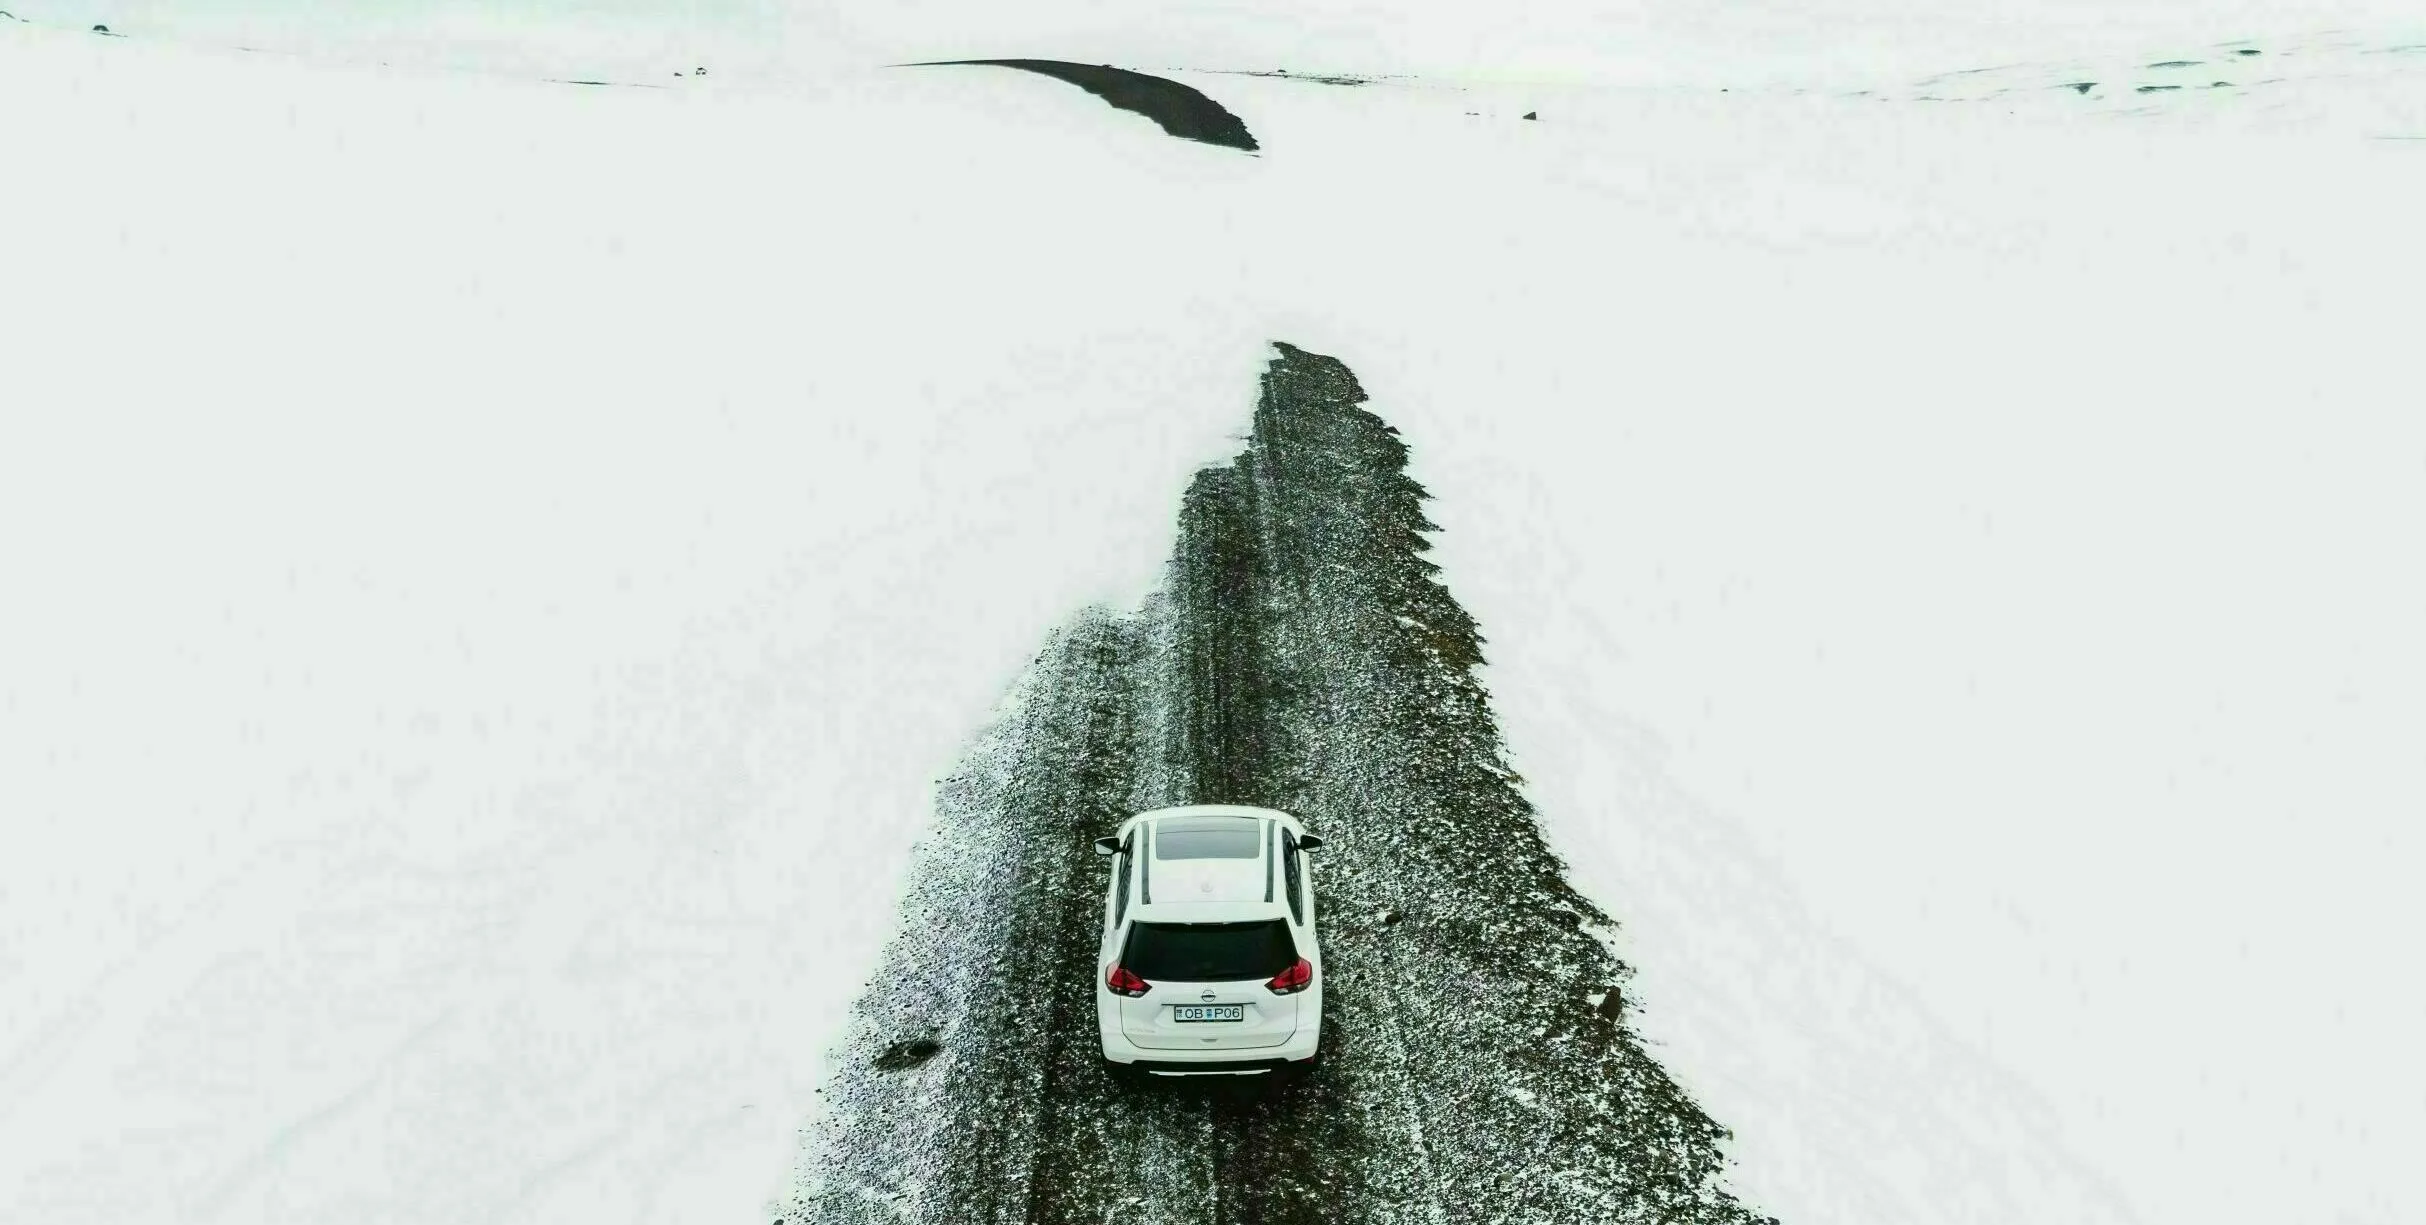 Westisland Winter Straße, Schnee am Straßenrand